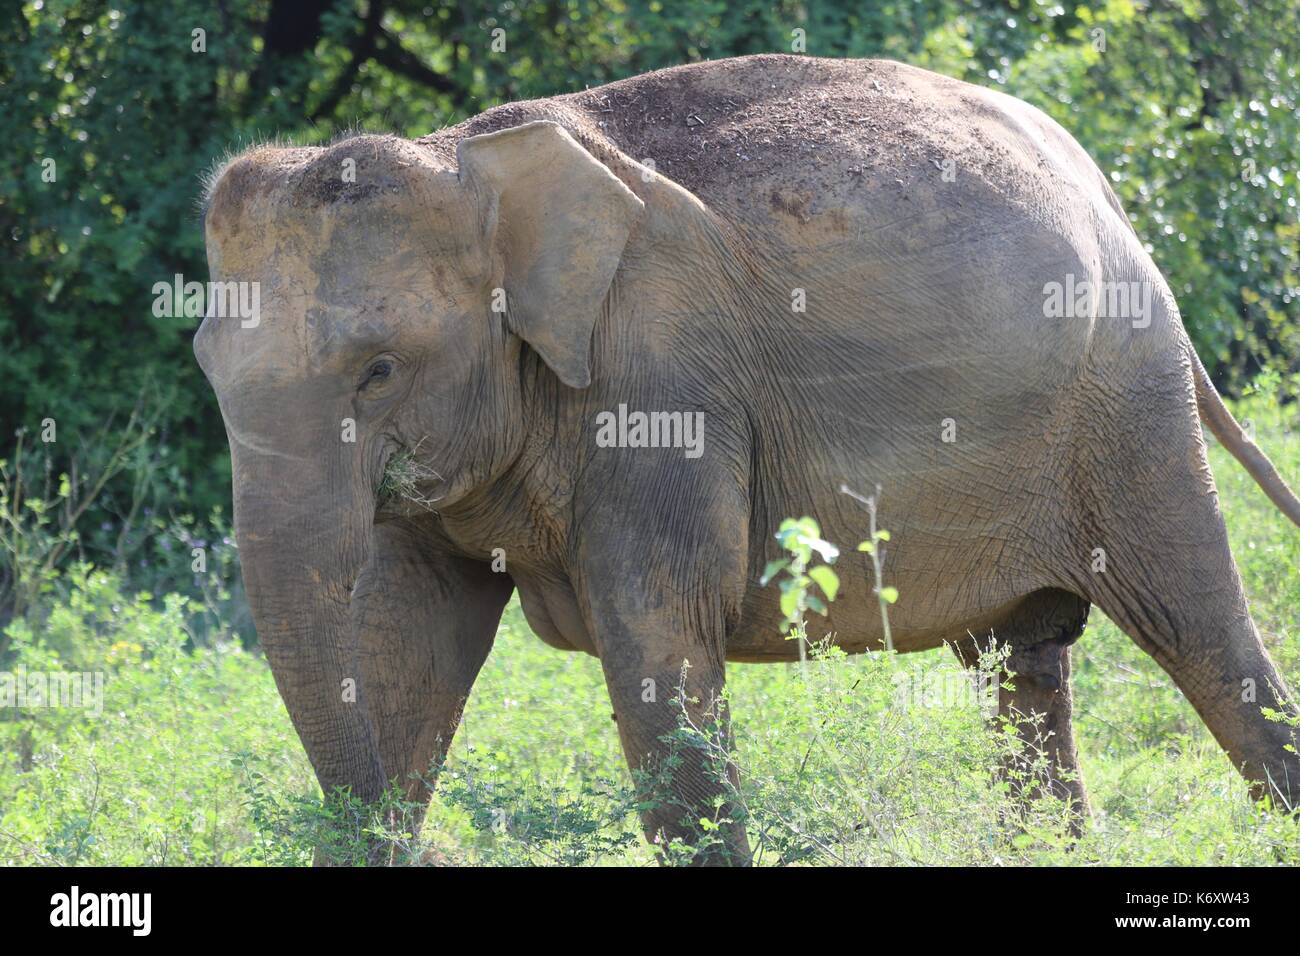 Parc national de Kaudulla, éléphants sauvages d'Asie, Sri Lanka Banque D'Images